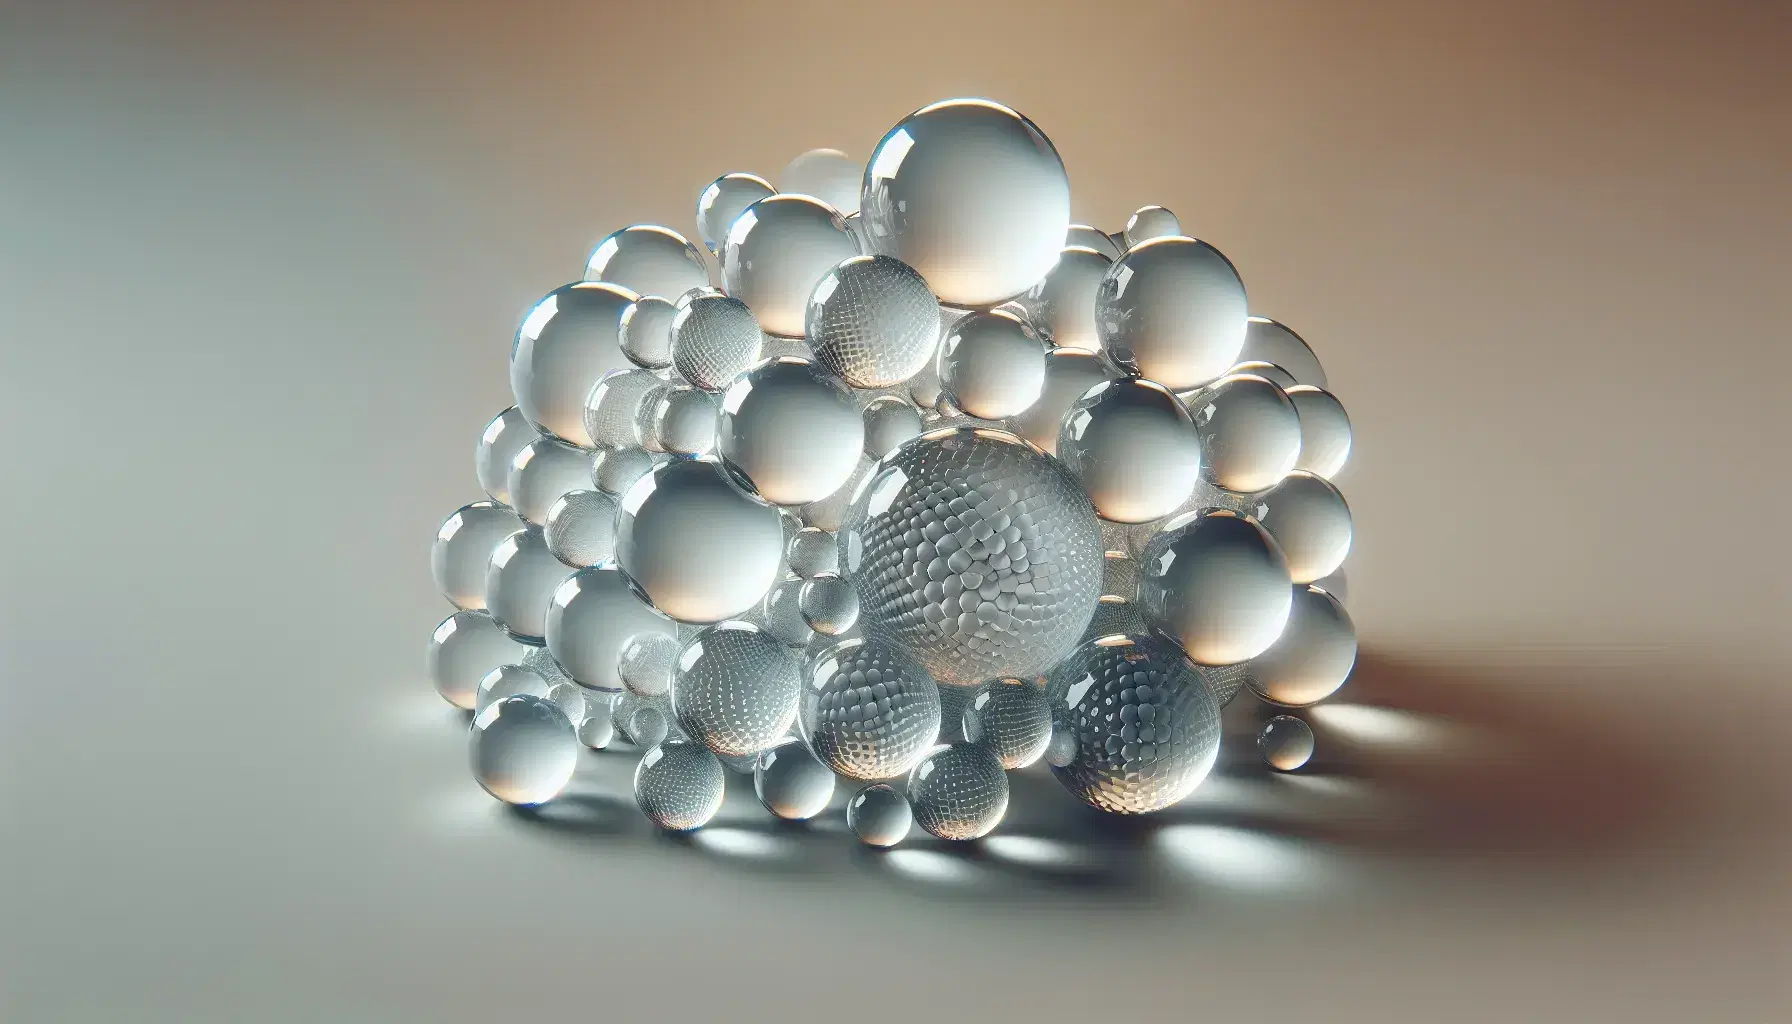 Esferas de vidrio transparentes de distintos tamaños entrelazadas, reflejando luz y proyectando patrones luminosos sobre fondo neutro.